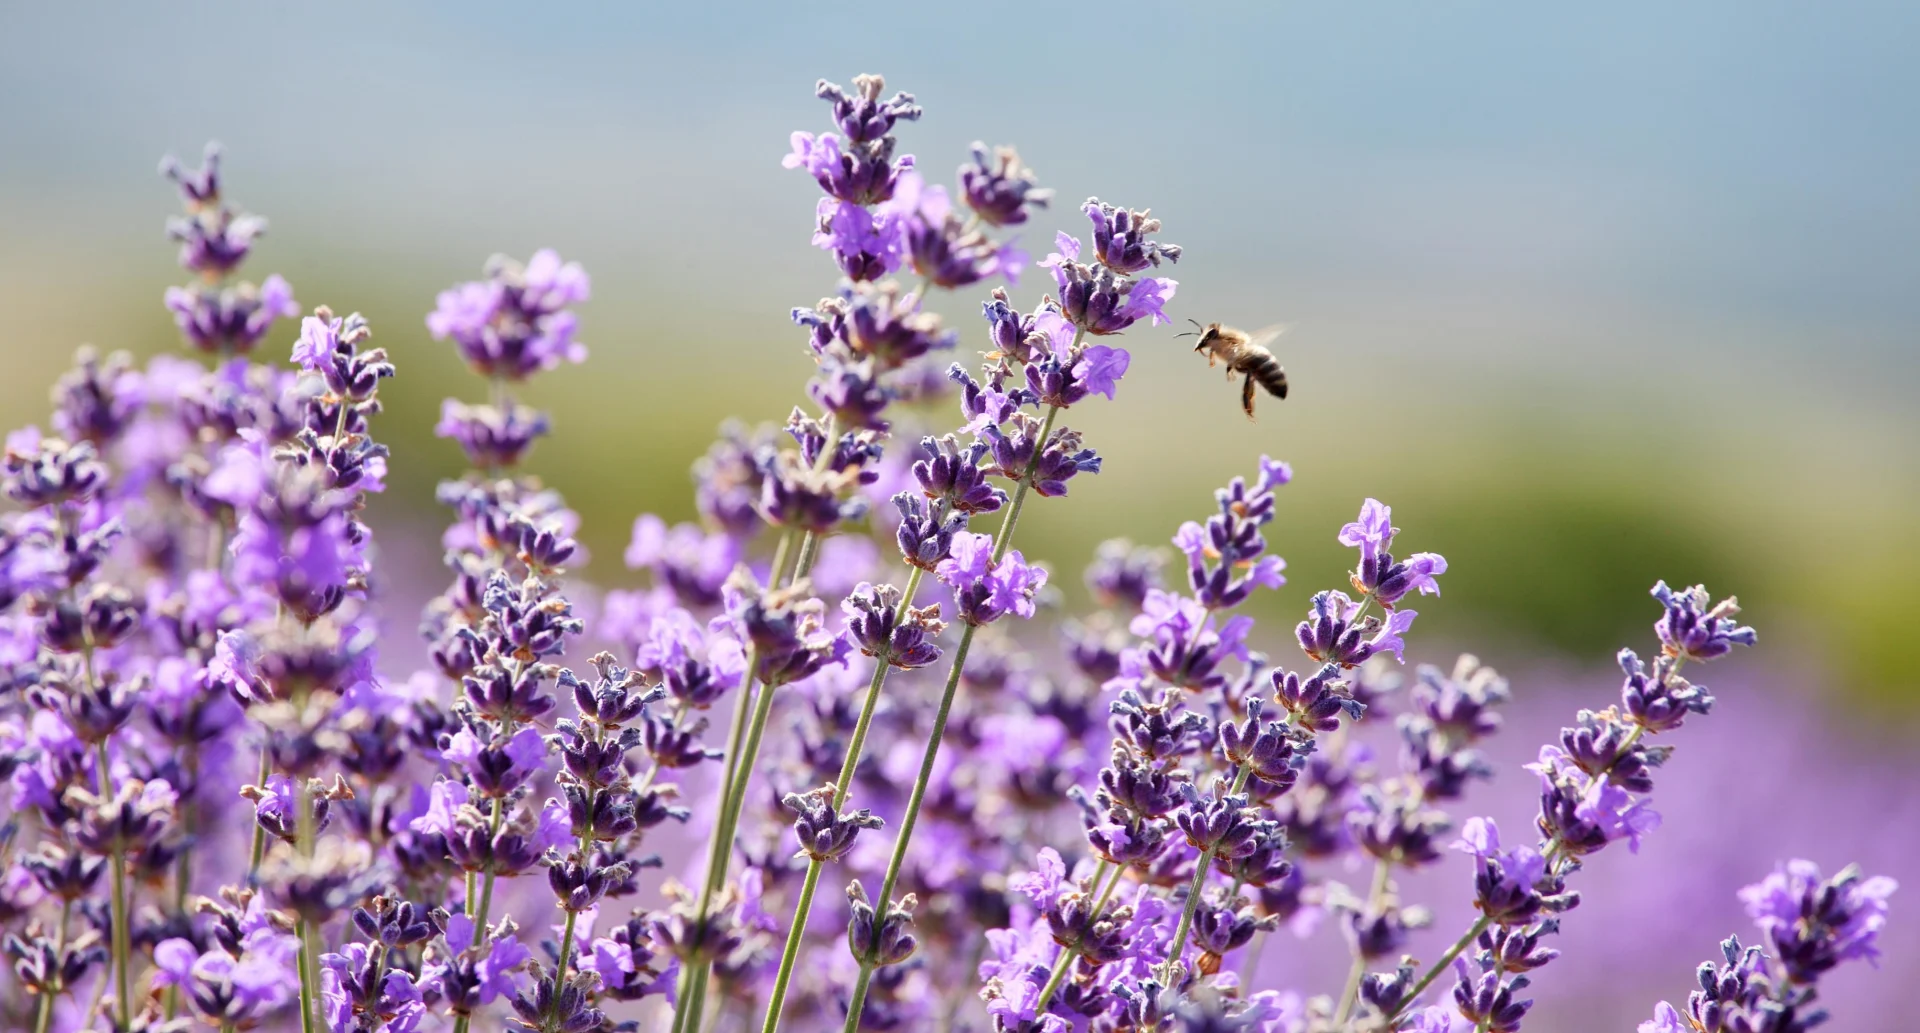 Lavendel mit einer Biene